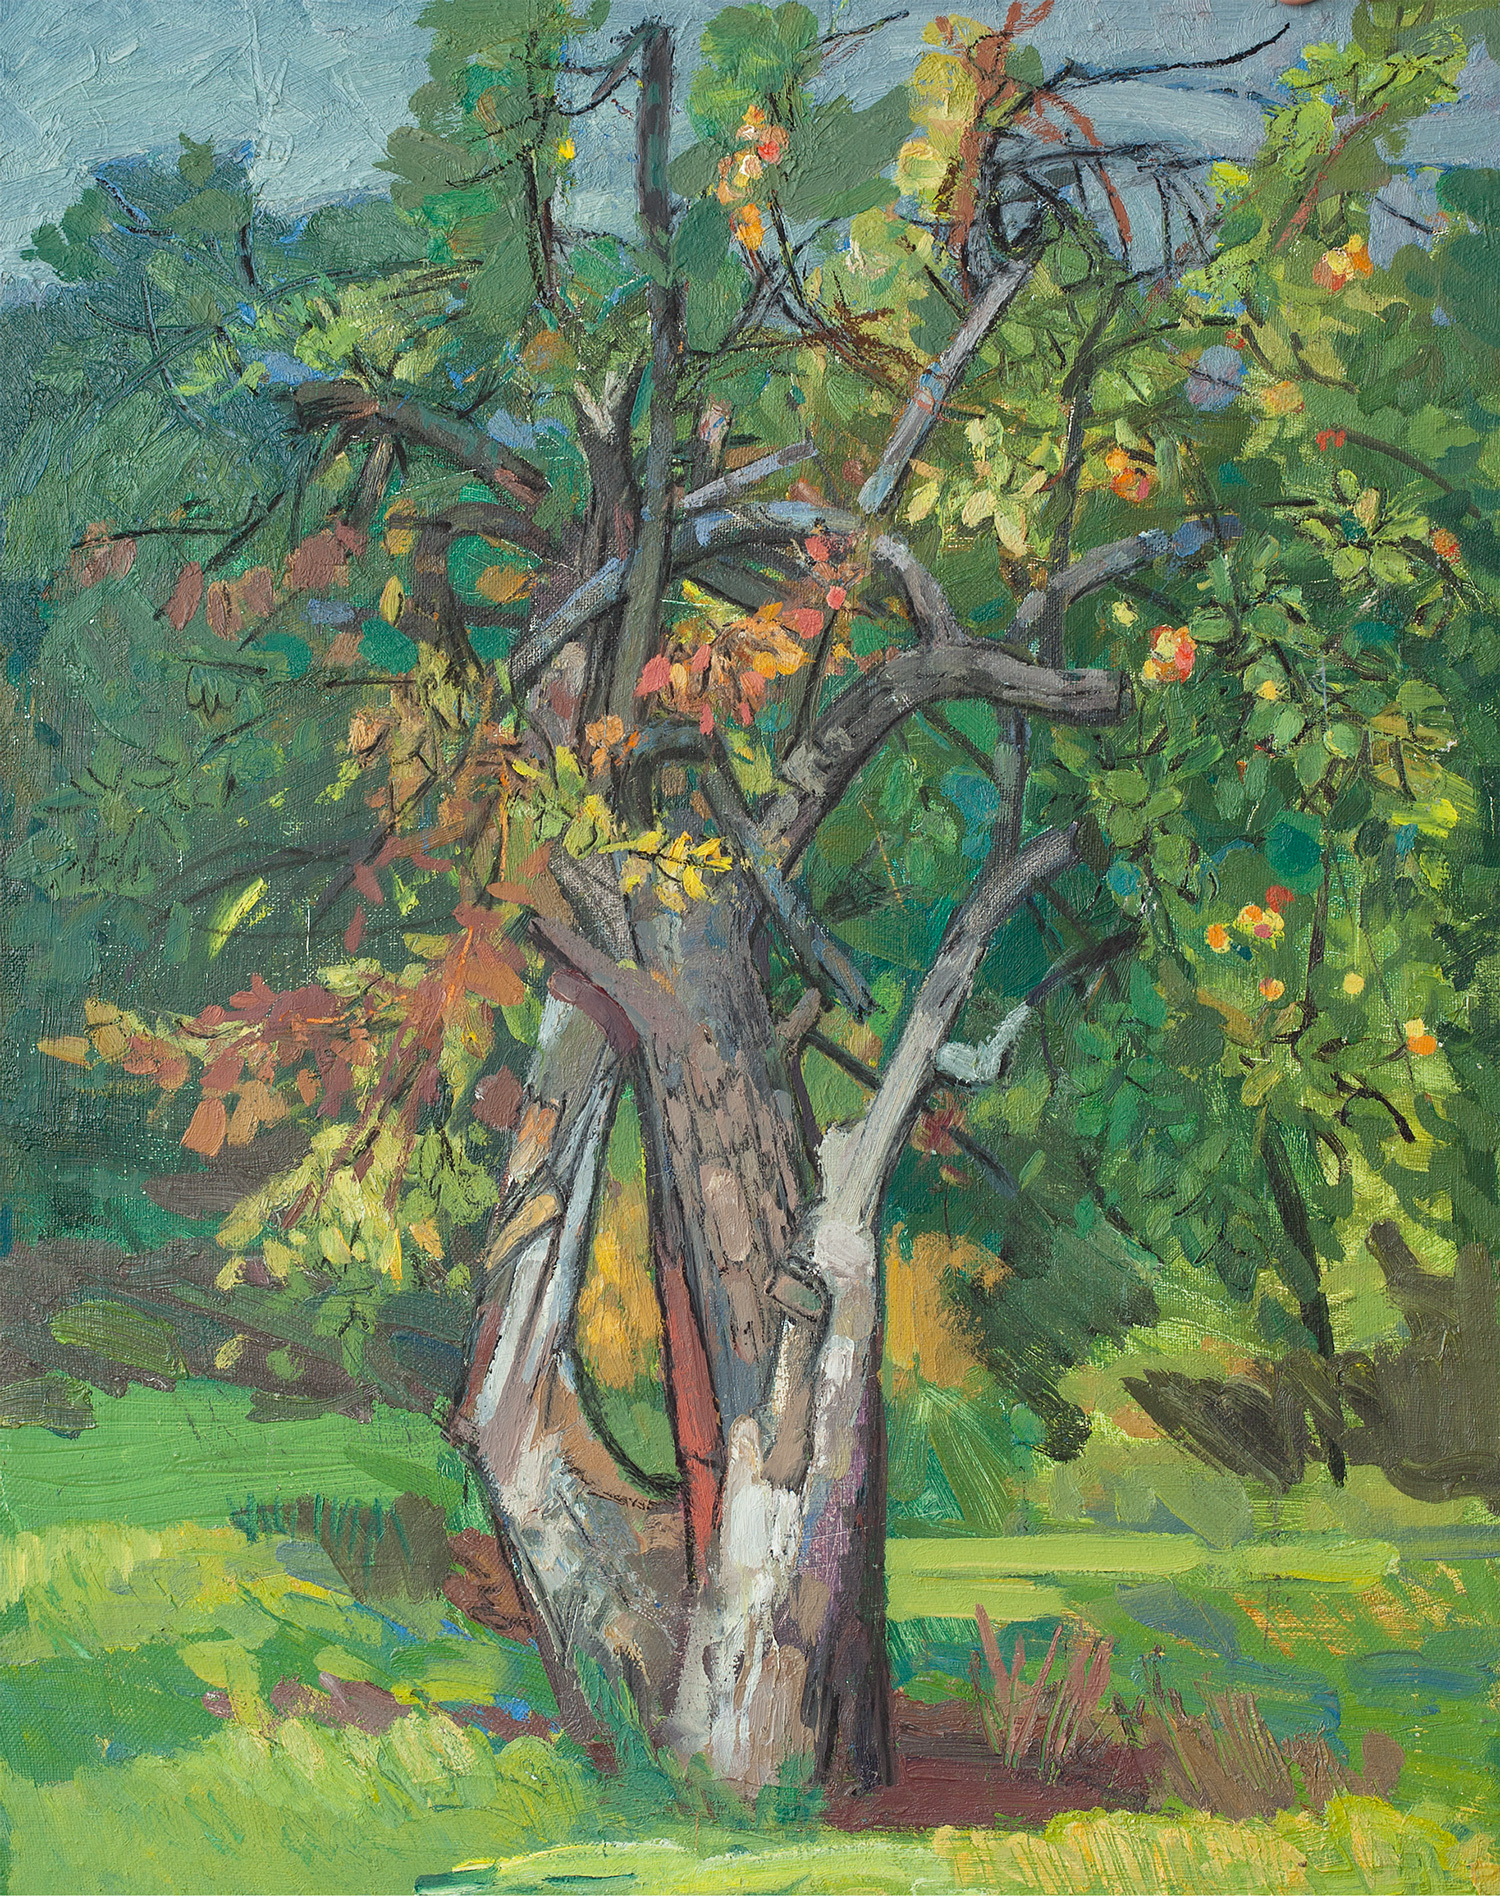 俄罗斯油画《苹果树》